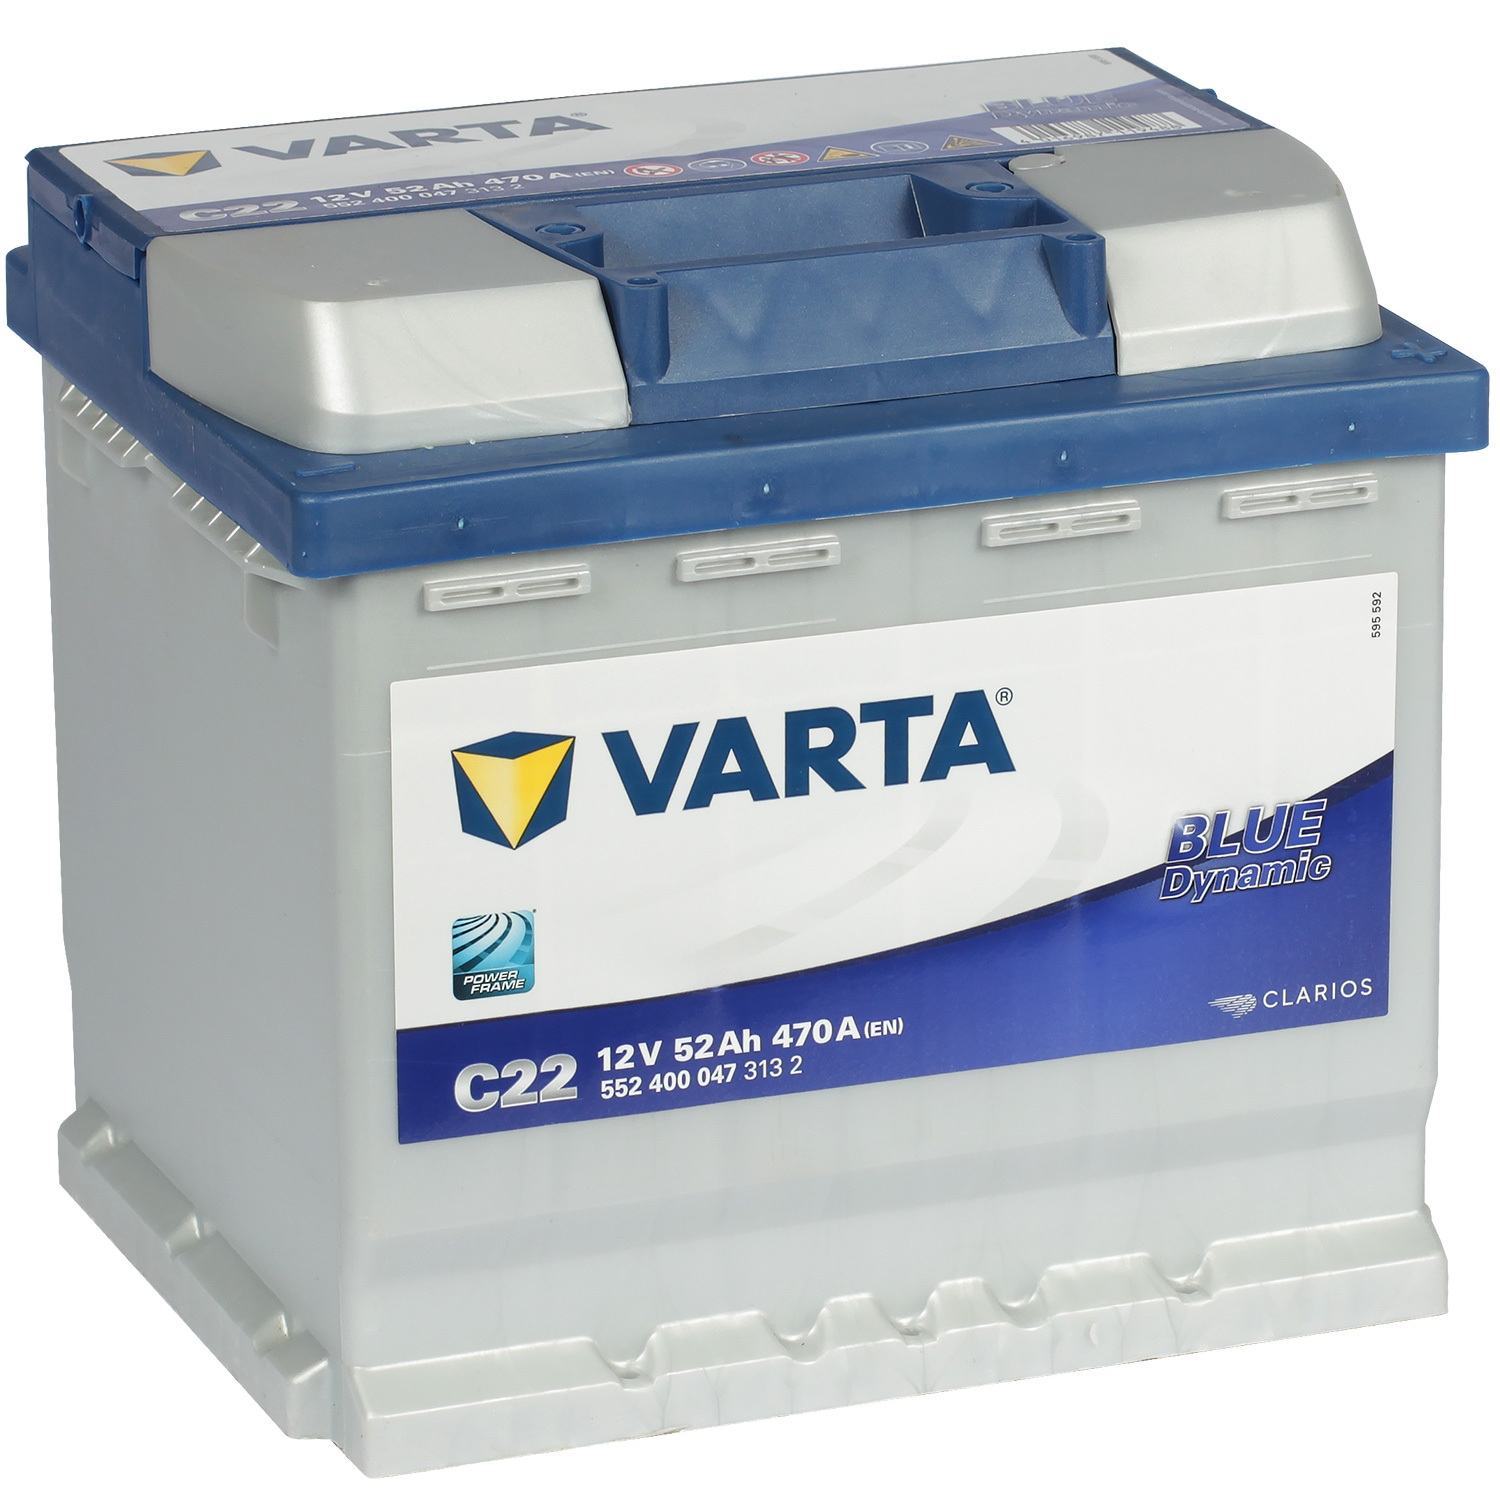 Varta Автомобильный аккумулятор Varta Blue Dynamic C22 52 Ач обратная полярность L1 varta автомобильный аккумулятор varta 45 ач обратная полярность b24l